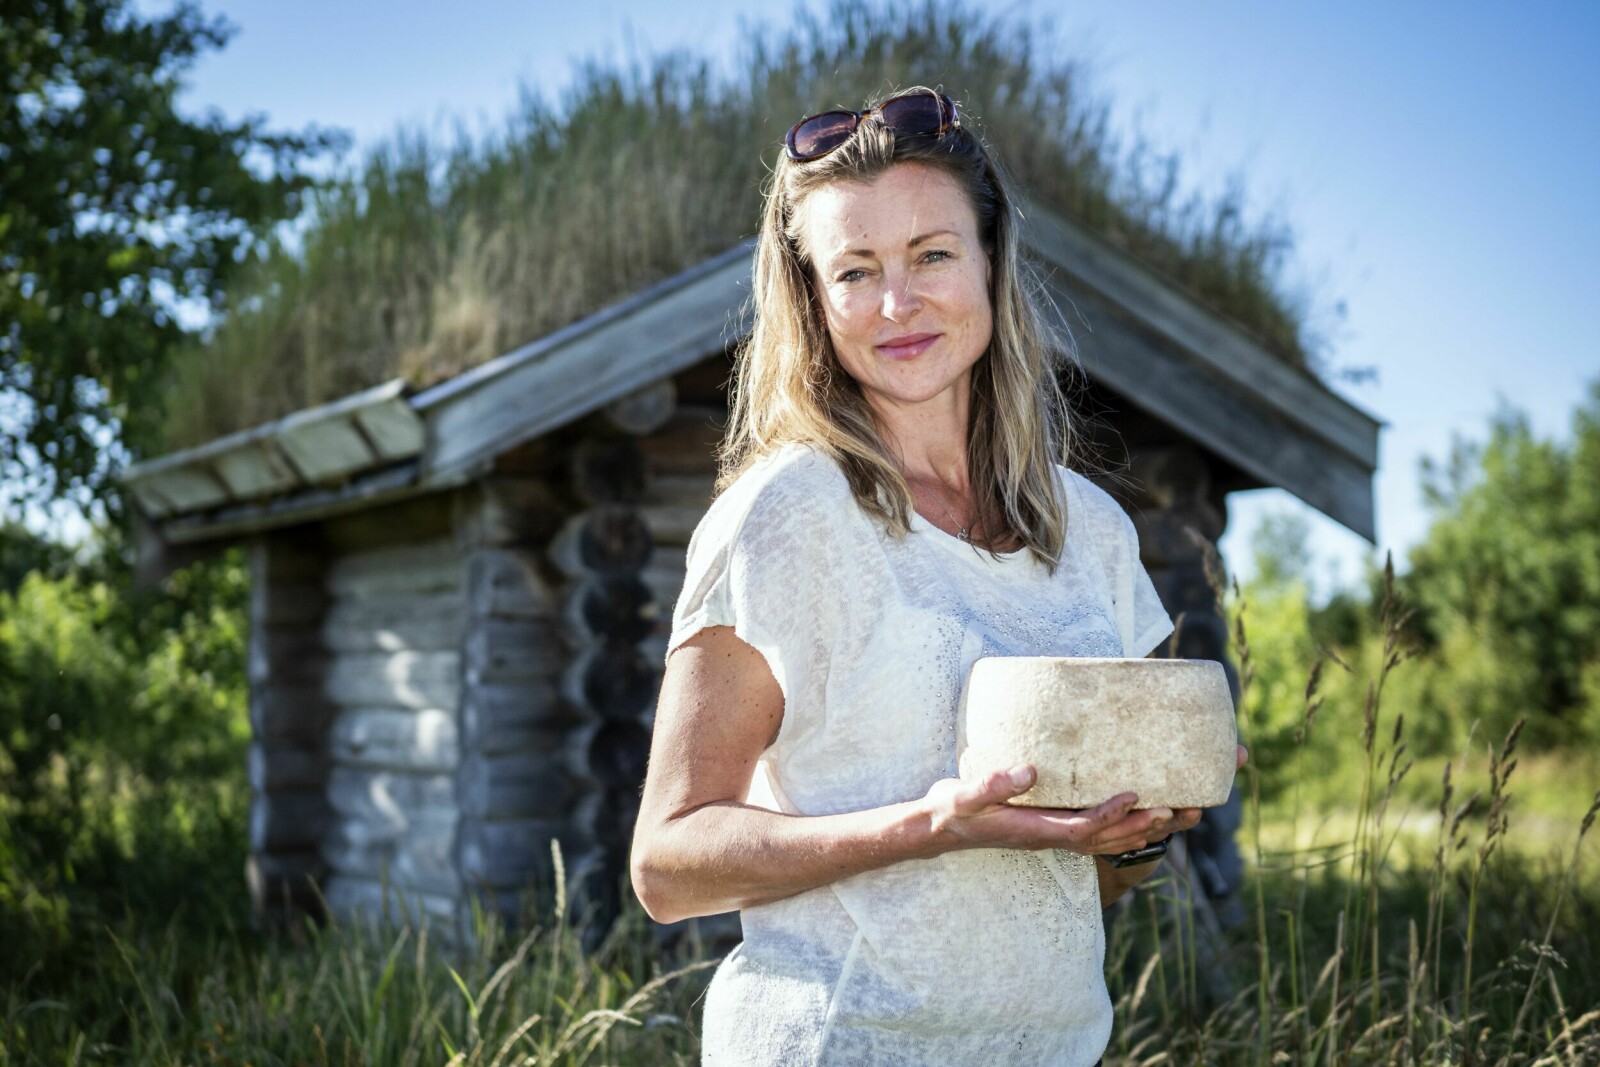 <b>KVALITETSOST:</b> Mona Nynes er stolt av osten som lages på Hitra Gårdsmat. Osten får sin spesielle karakter mye på grunn av beliggenheten ute ved havet – og godt dyrestell.